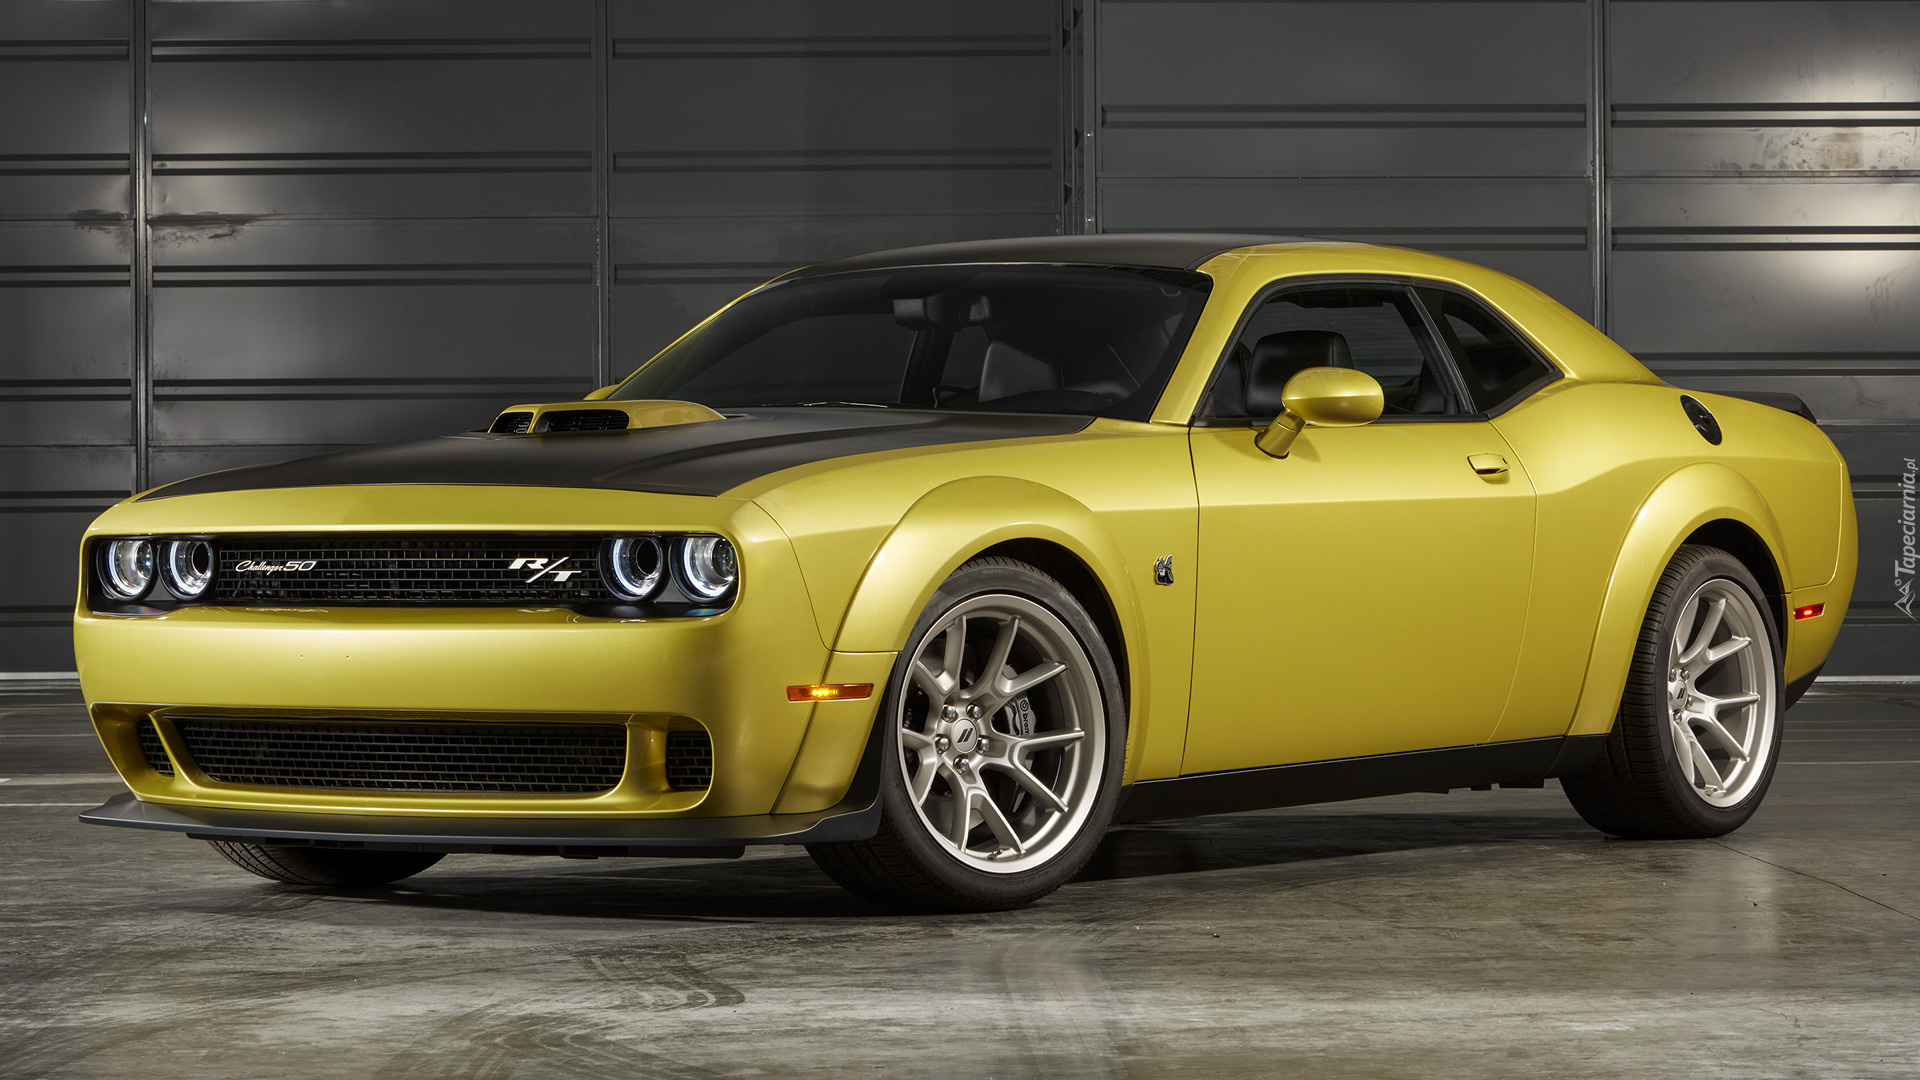 Żółty, Dodge Challenger RT